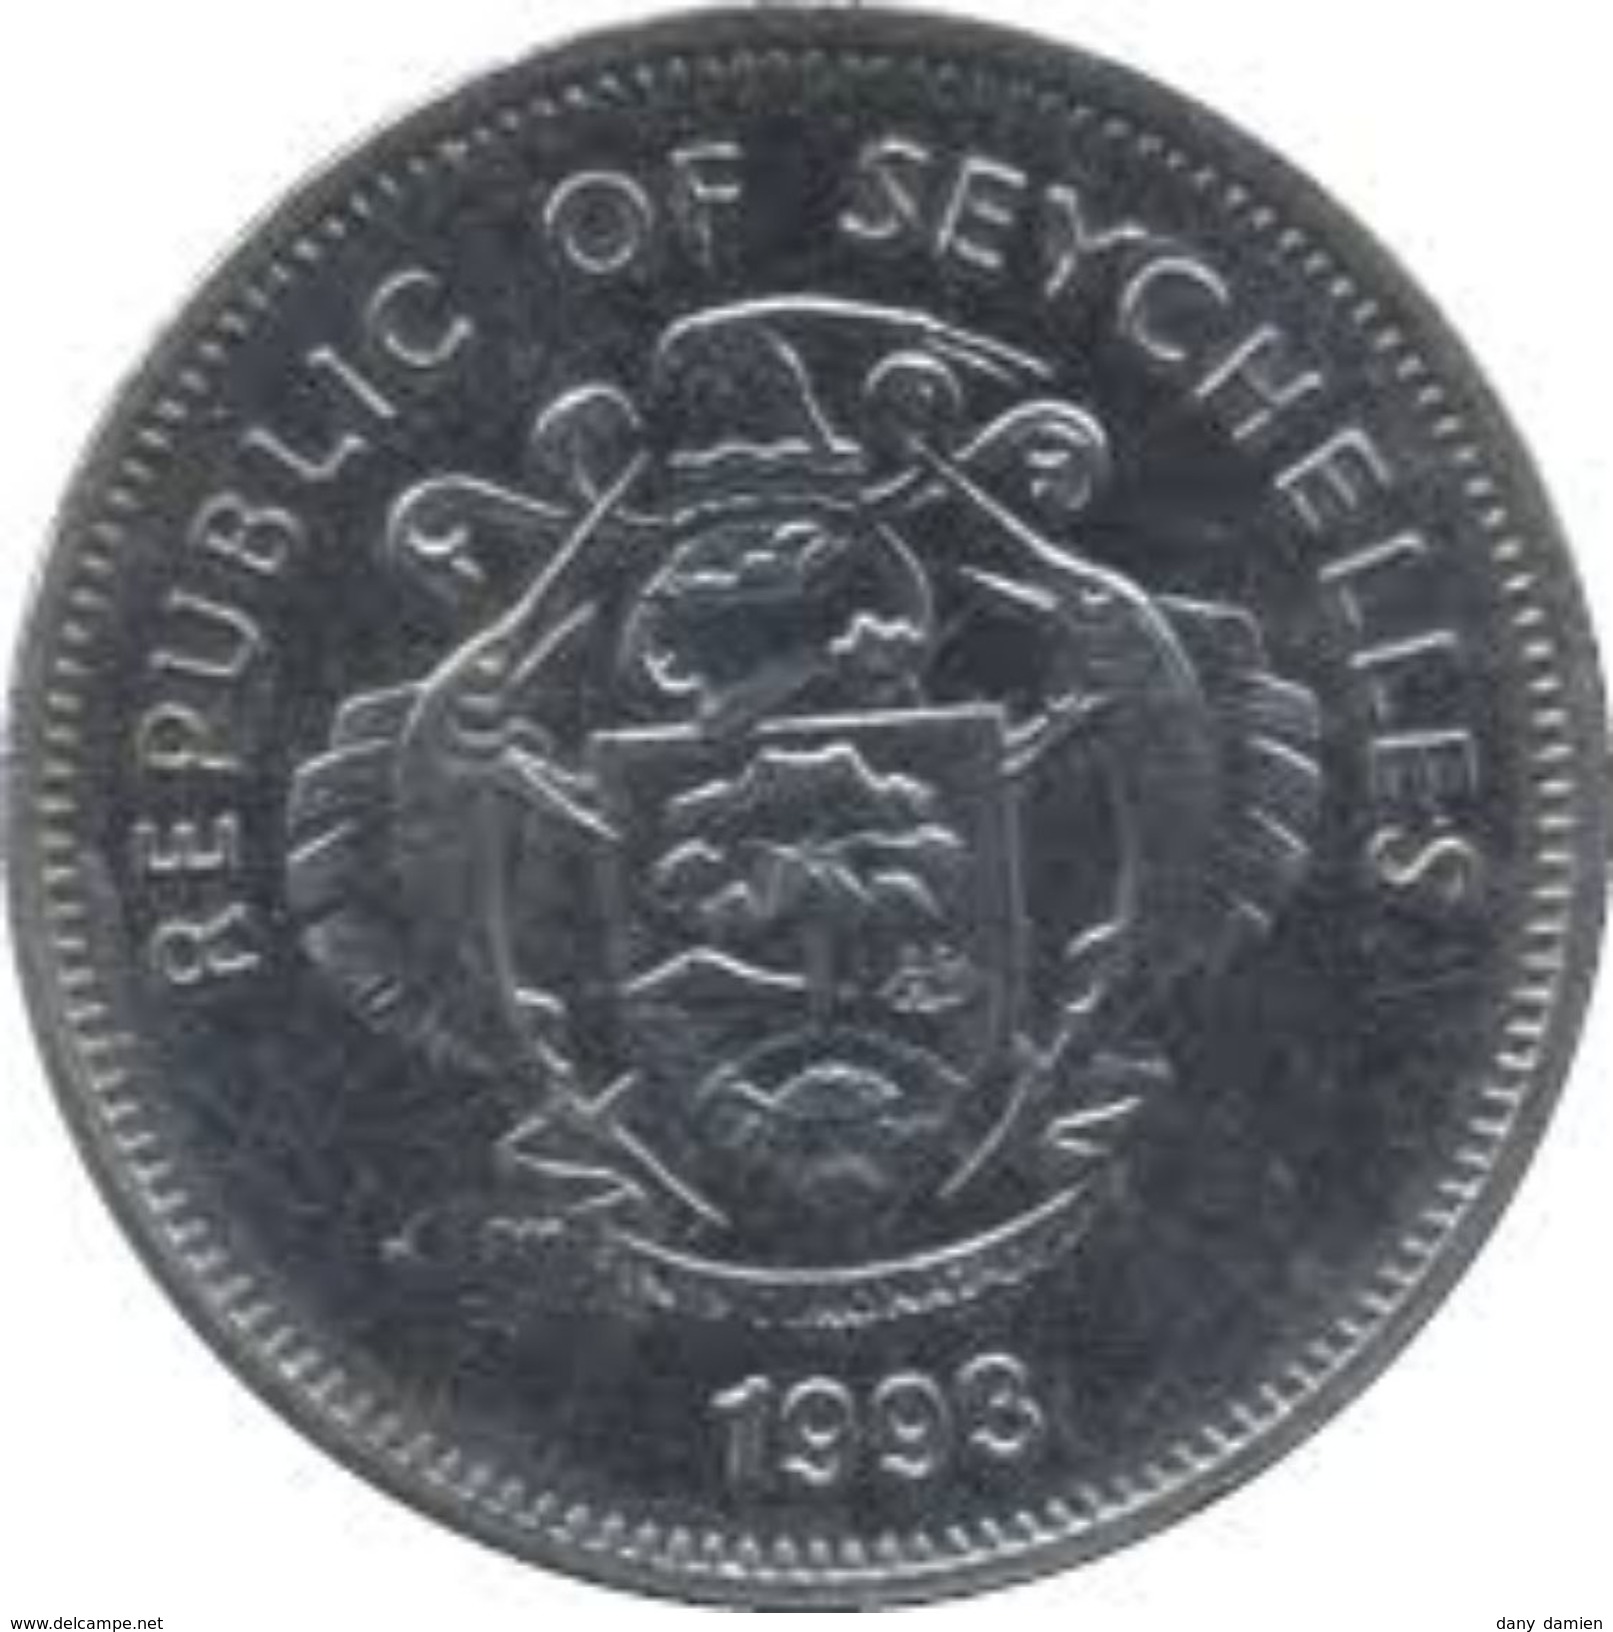 SEYCHELLES - REPUBLIC OF SEYCHELLES - 25 CENTS (1993) A - Seychelles